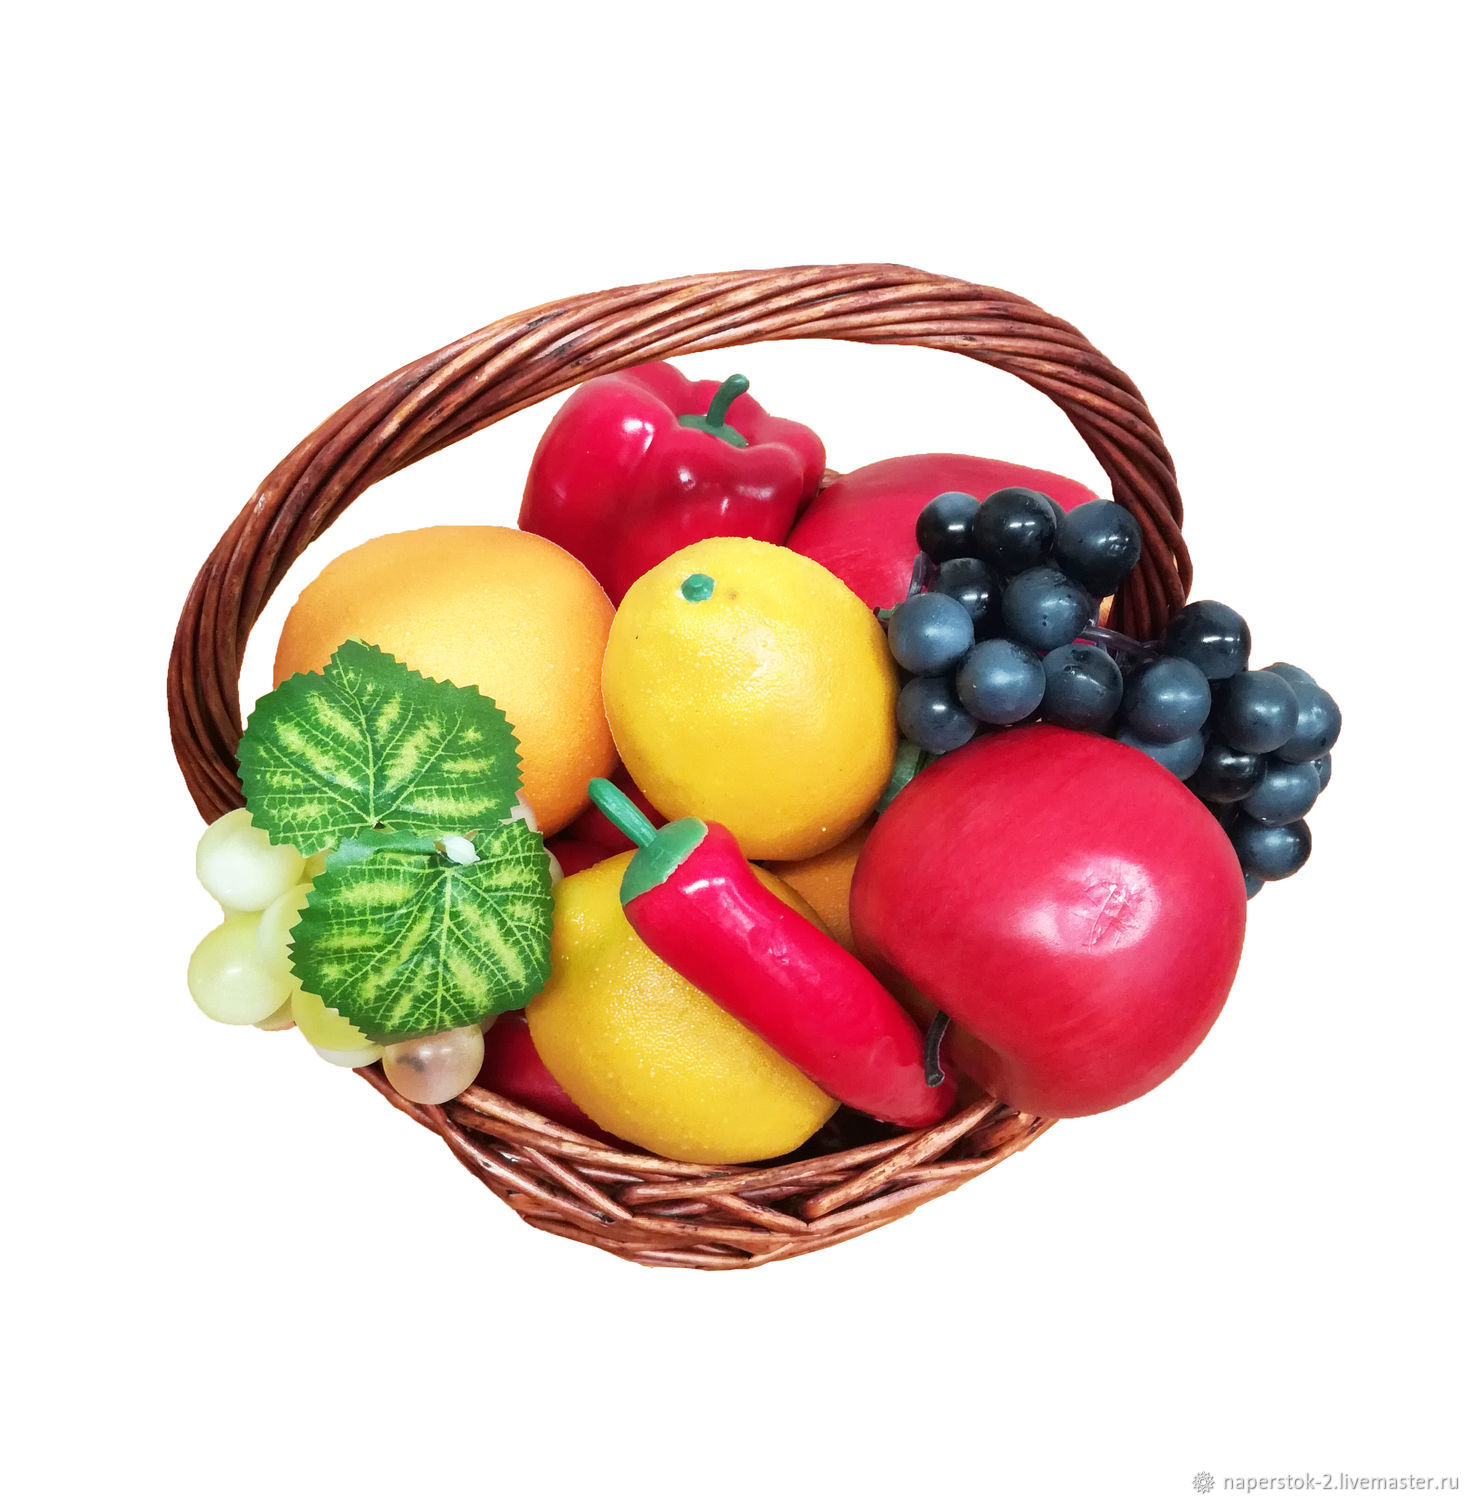 Купить плодовые в москве. Муляжи овощей и фруктов. Фрукты муляж. Муляжи овощей и фруктов для детского сада. Искусственные фрукты.